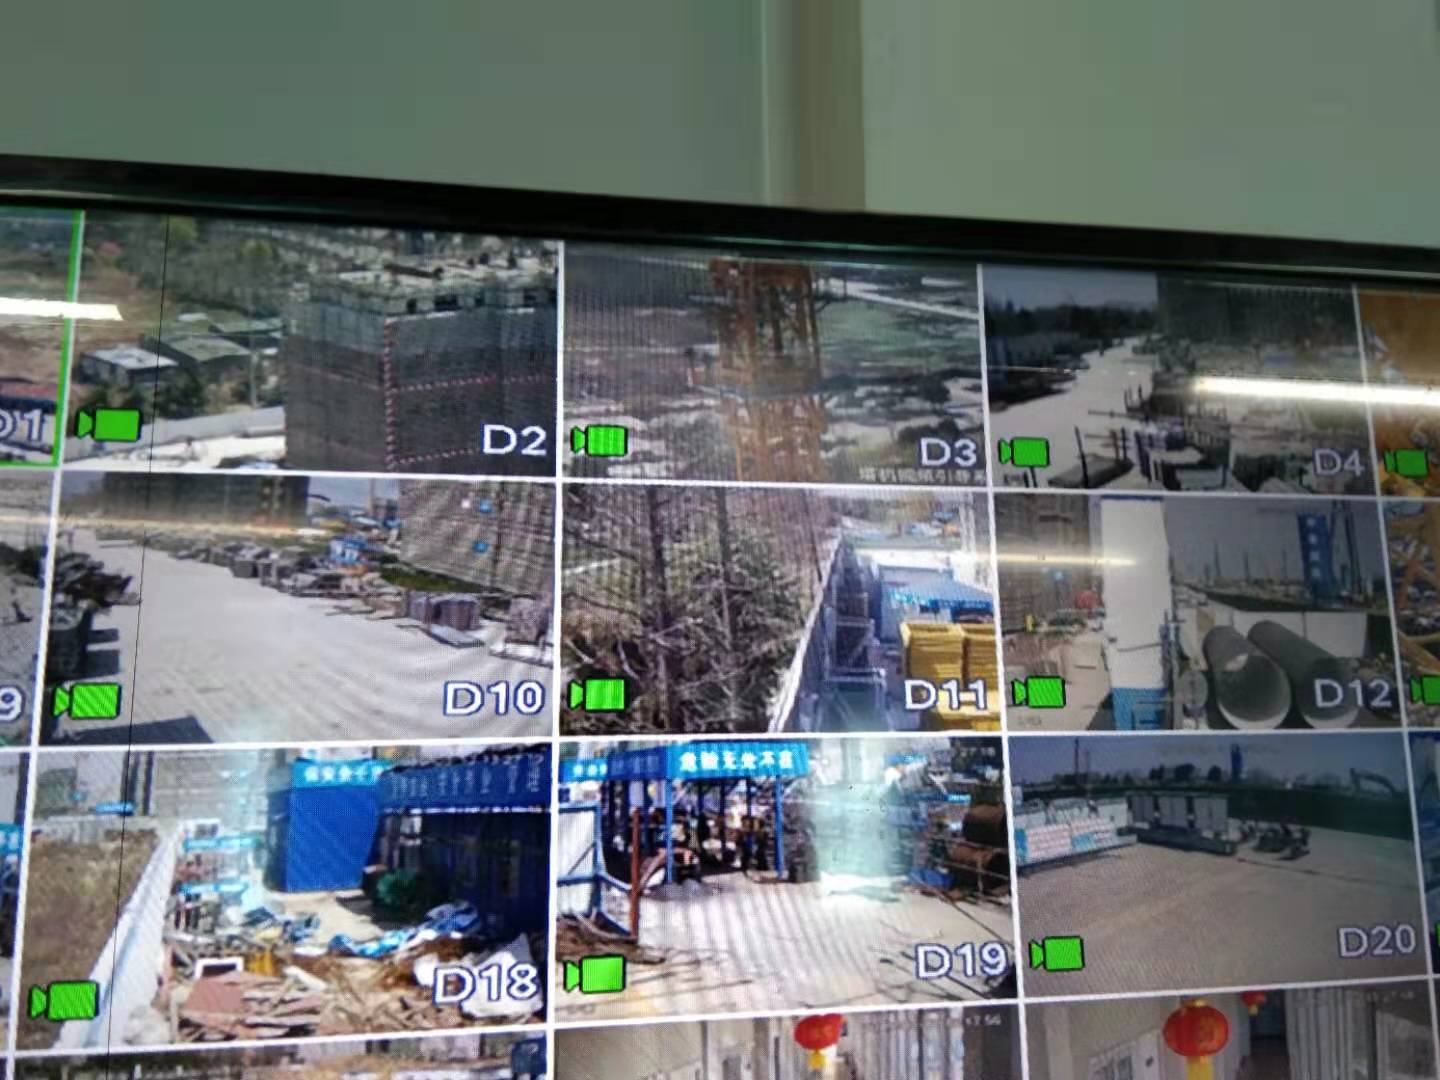 嘉兴塔吊安全监控系统生产厂家